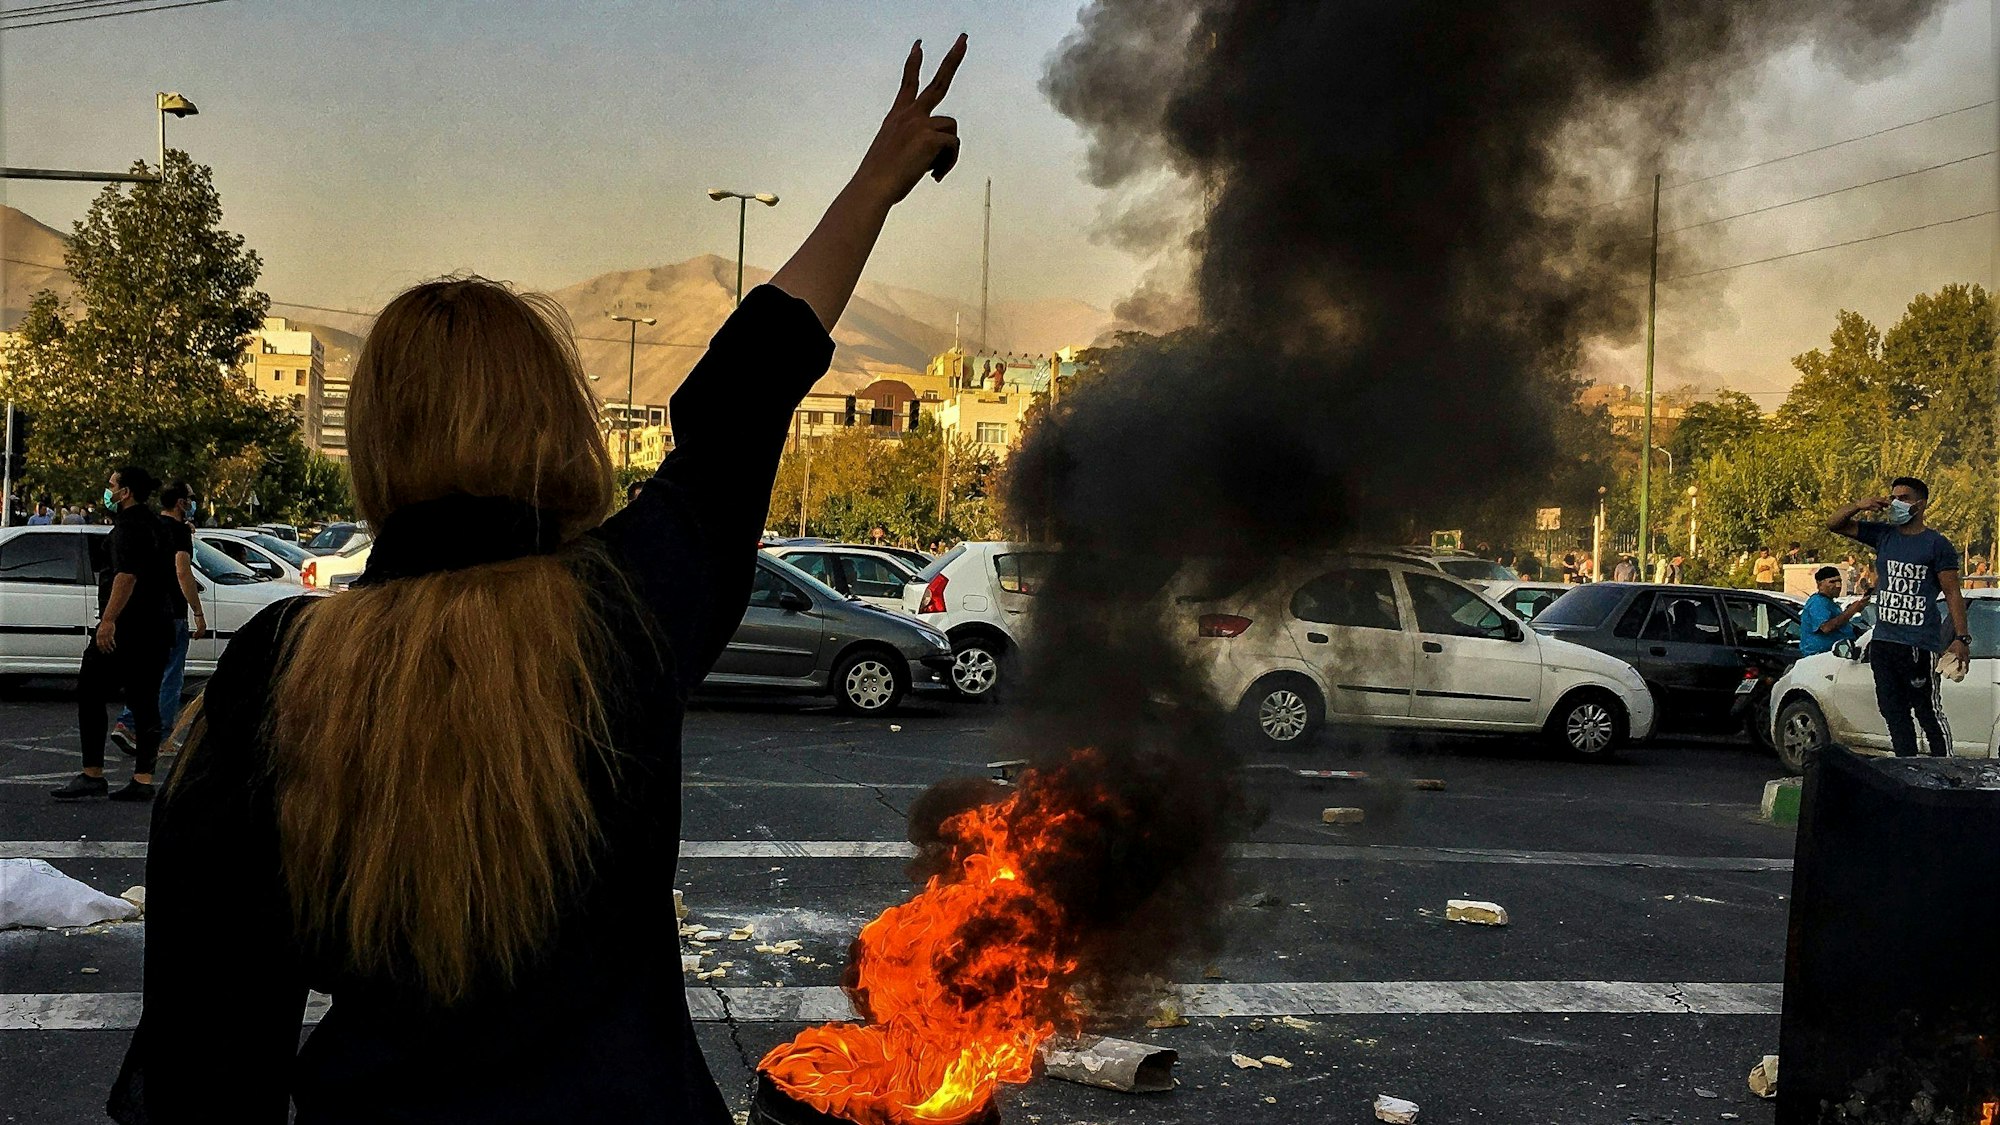 Eine Frau steht während einer Demonstration vor einem brennenden Autoreifen und macht das Victory-Zeichen.